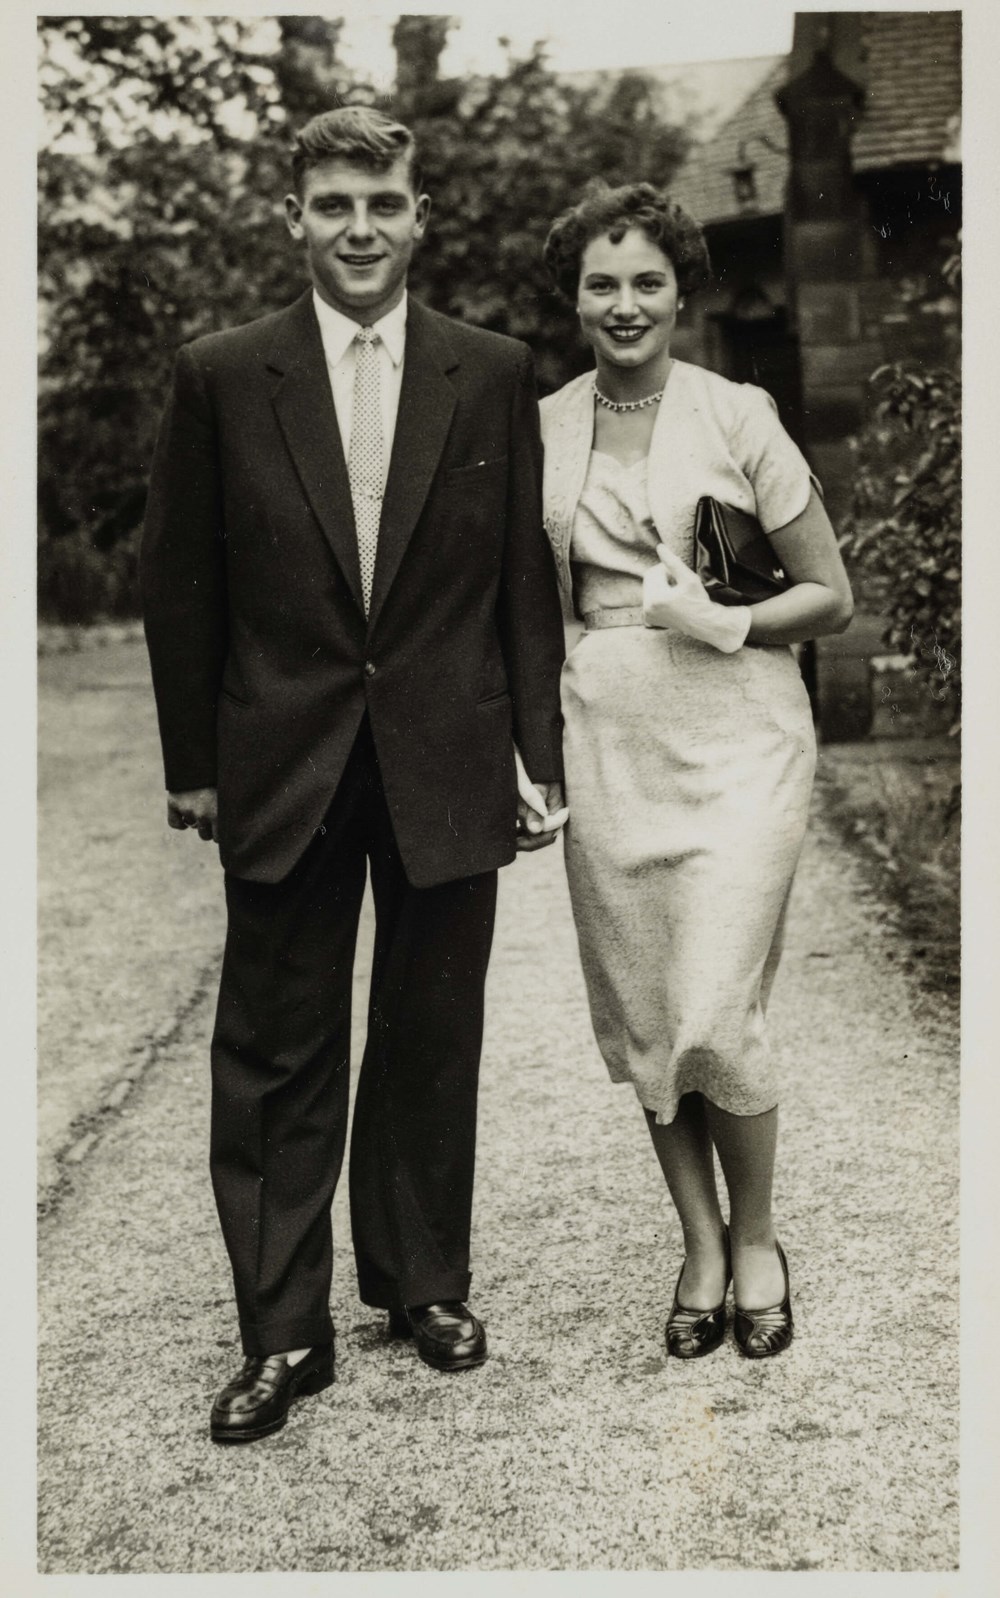 Duncan Edwards & Molly Leech portrait photograph